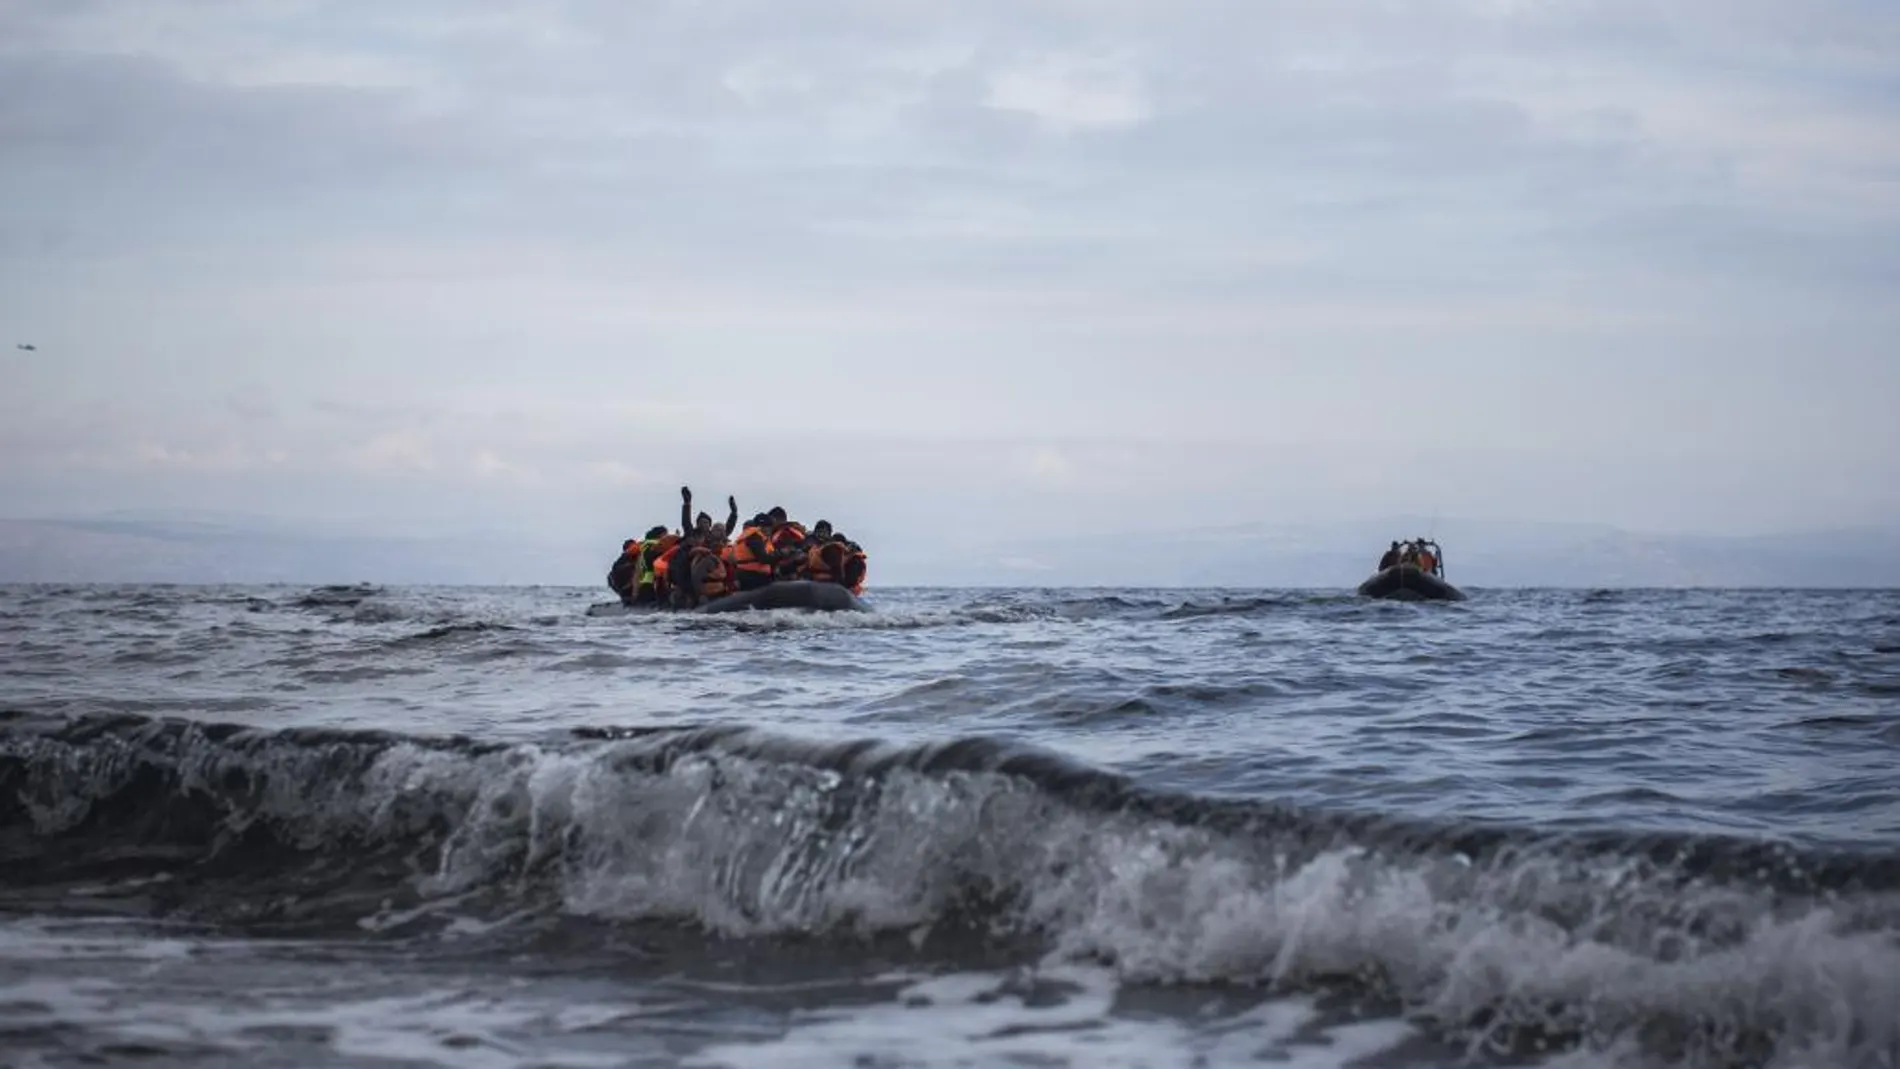 Refugiados y emigrantes en varias embarcaciones llegan a la costa de la isla griega de Lesbos tras cruzar el mar Egeo desde el Turquía